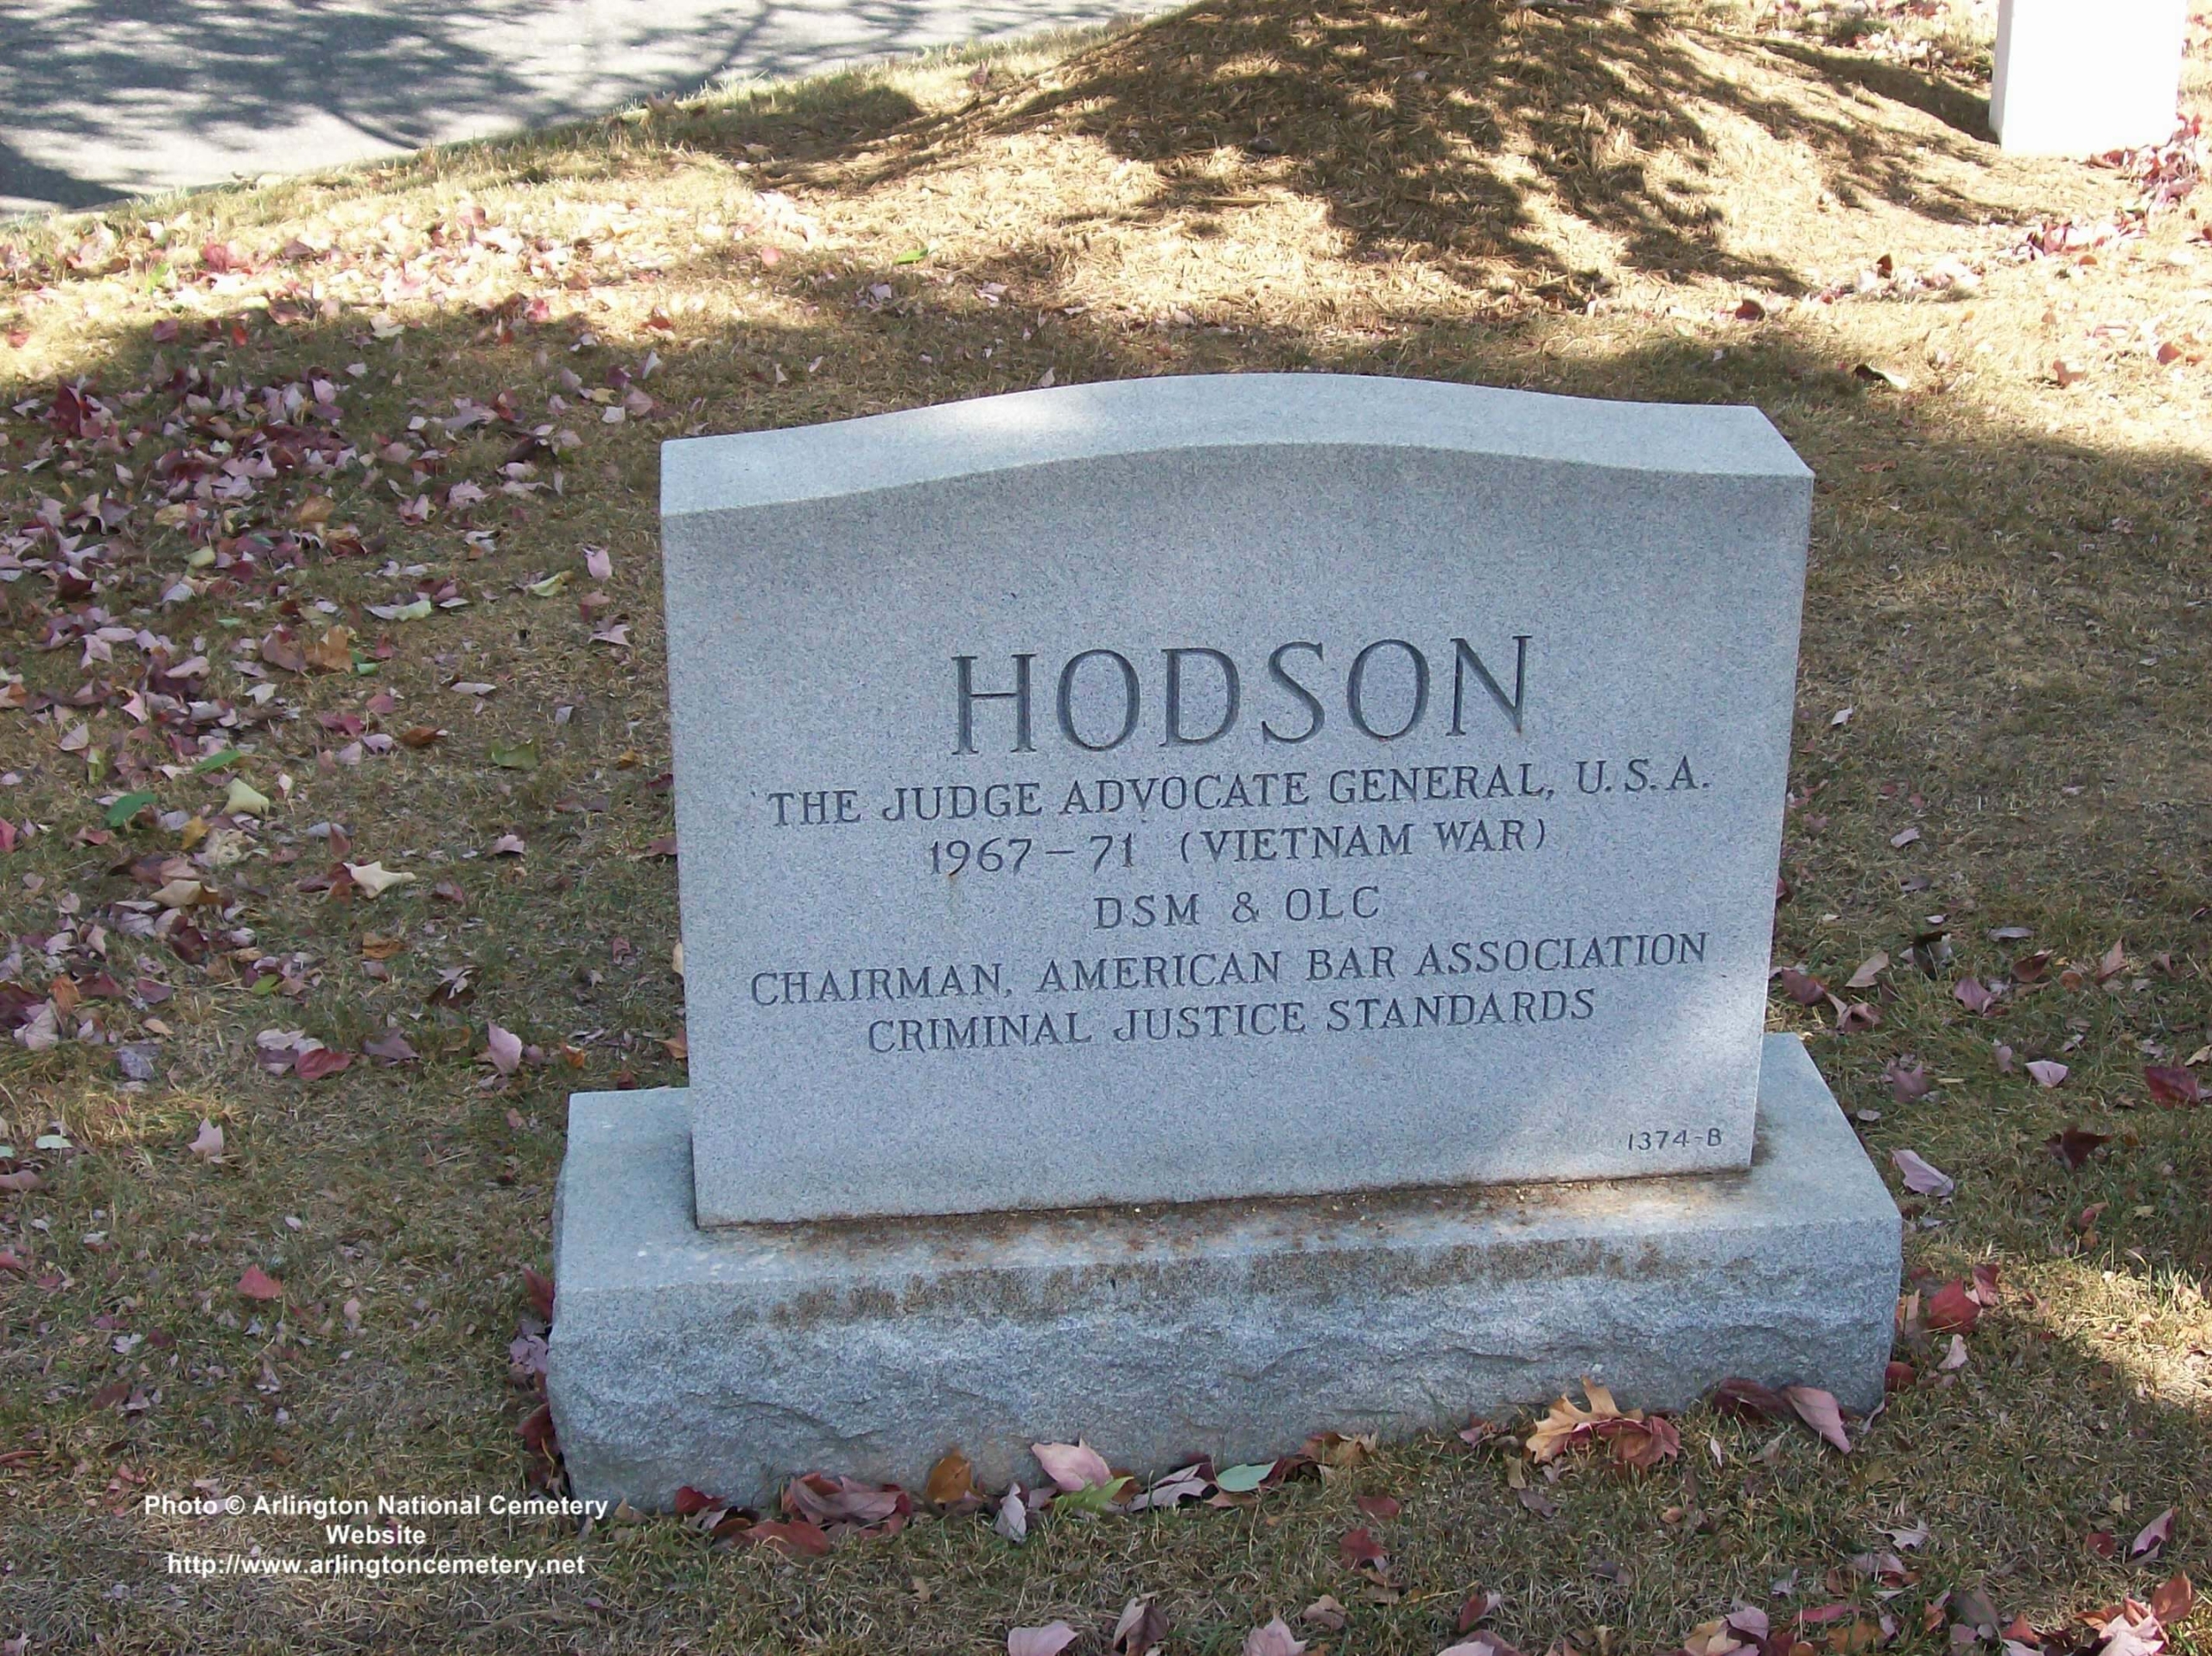 kjhodson-gravesite-photo-october-2007-002